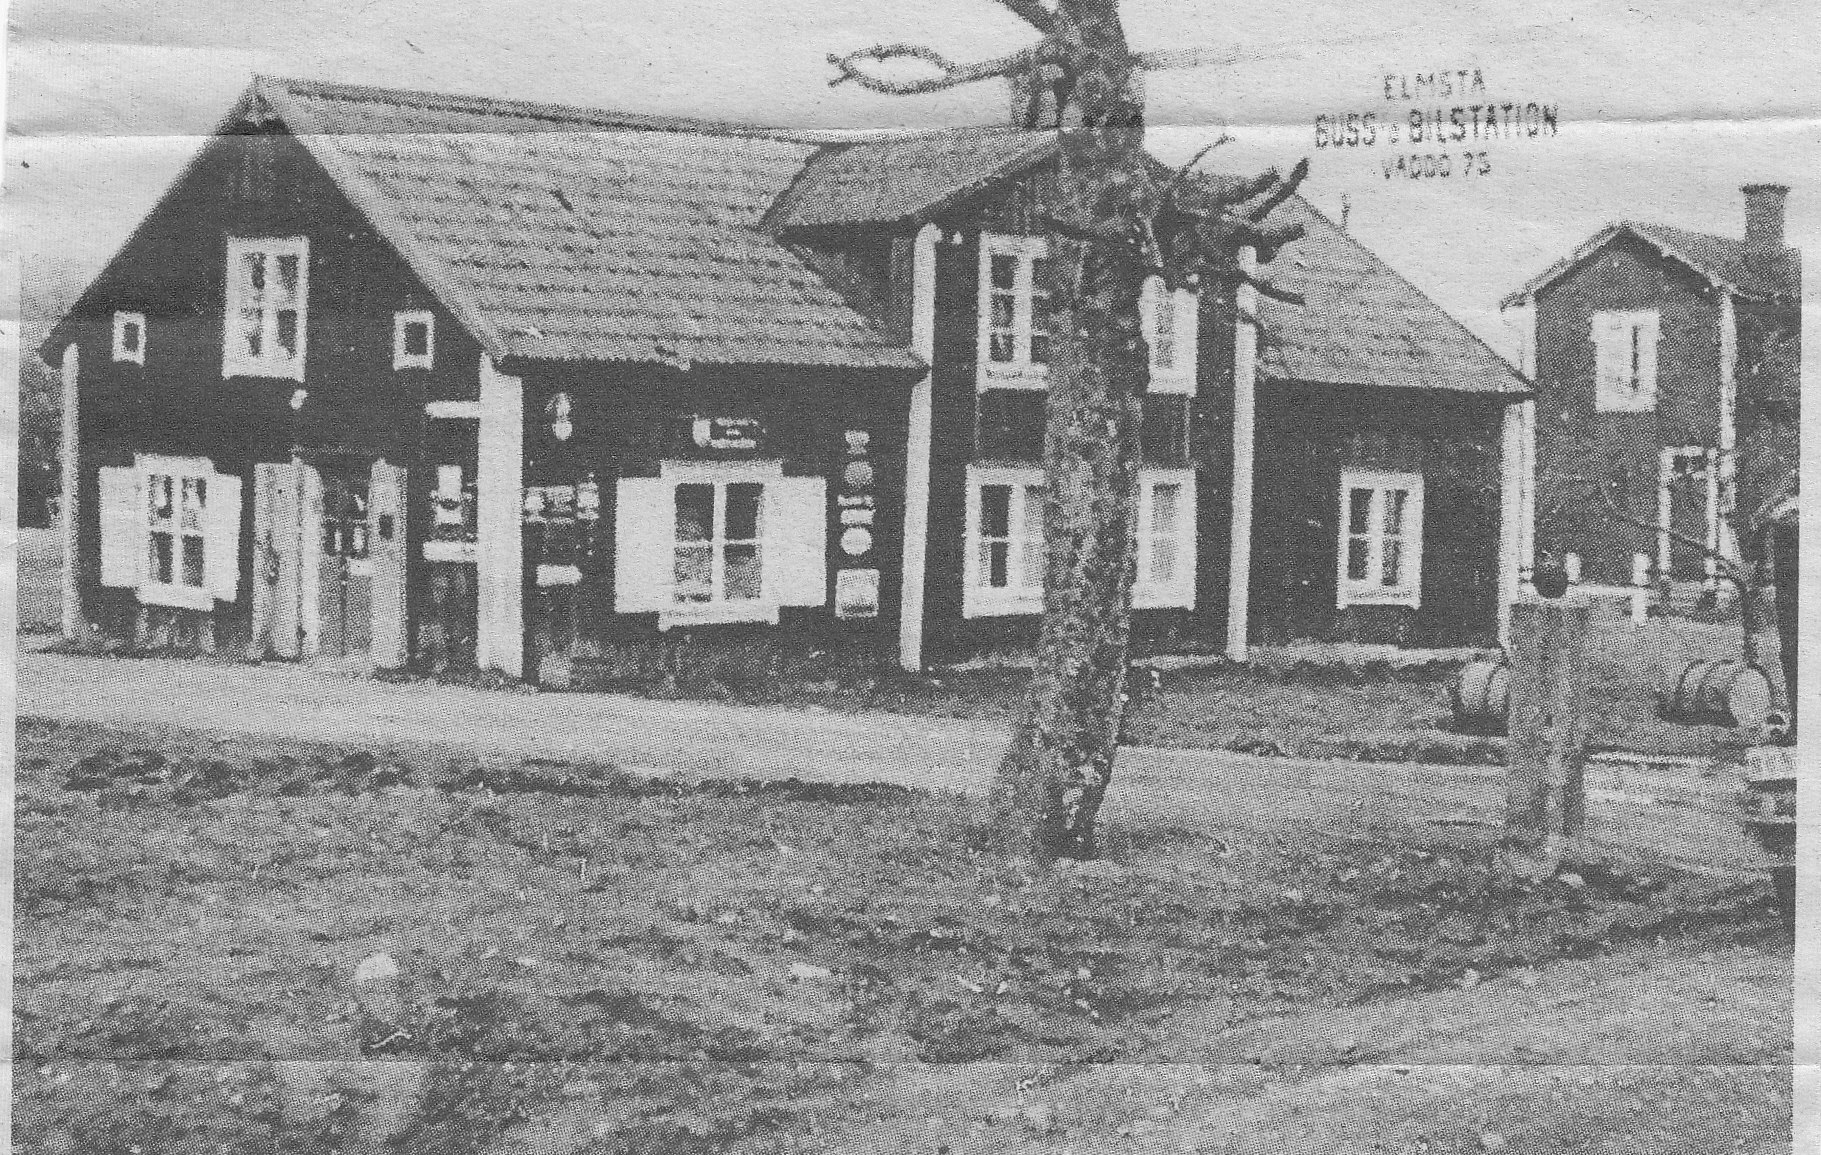 Magnus Erikssons specialaffär i Elmsta. Innan 1935. Byggnaden jämnades med marken och ersattes med en liten busstation med väntrum, kontor och ett lager för gods. Bild ur Norrtälje tidning. 